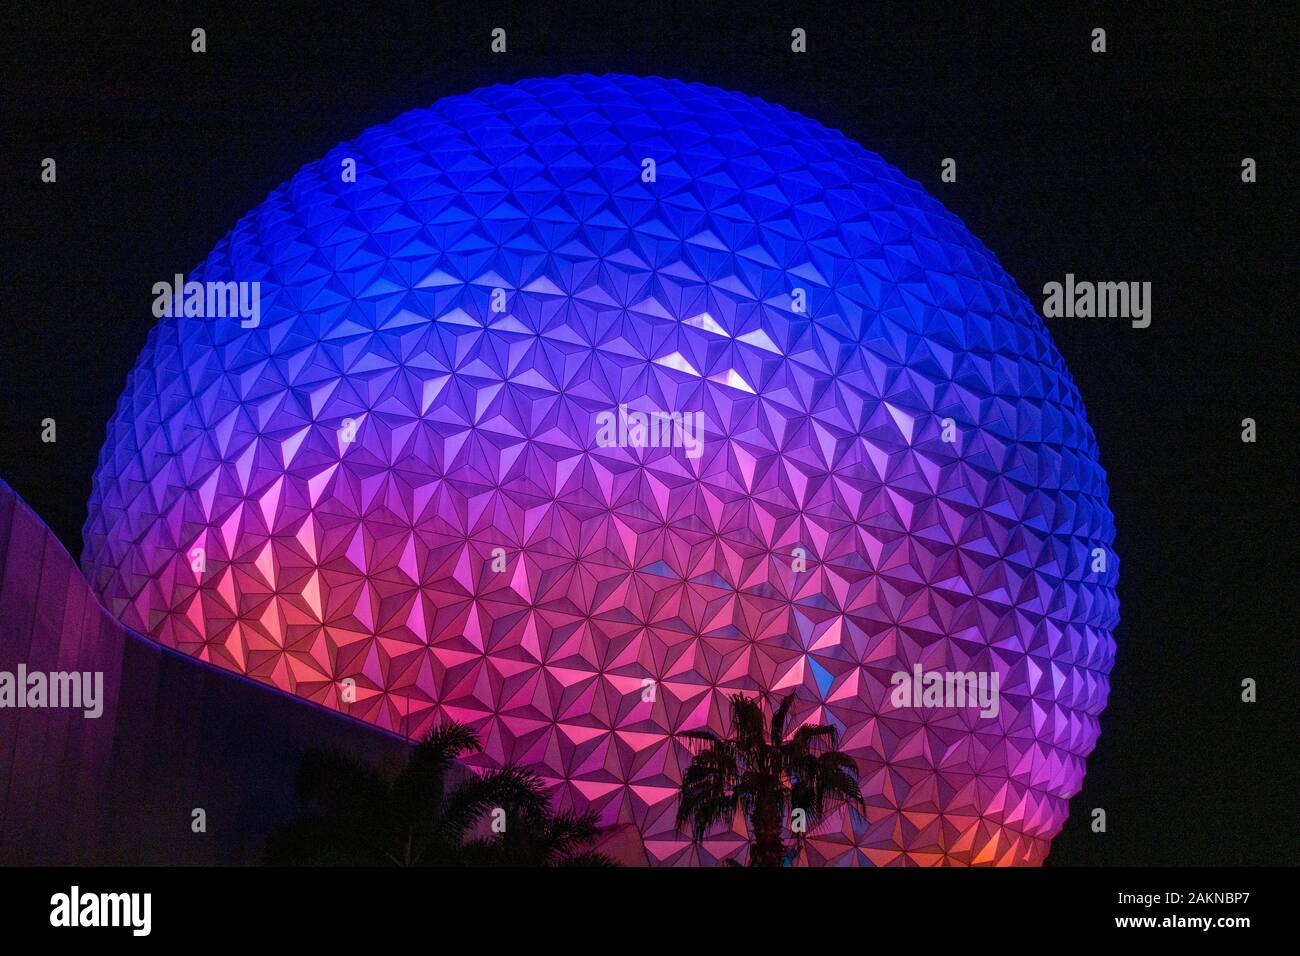 Außerhalb der "Raumschiff Erde" Fahrt in Epcot in Disney World, Orlando, Florida, USA. Stockfoto